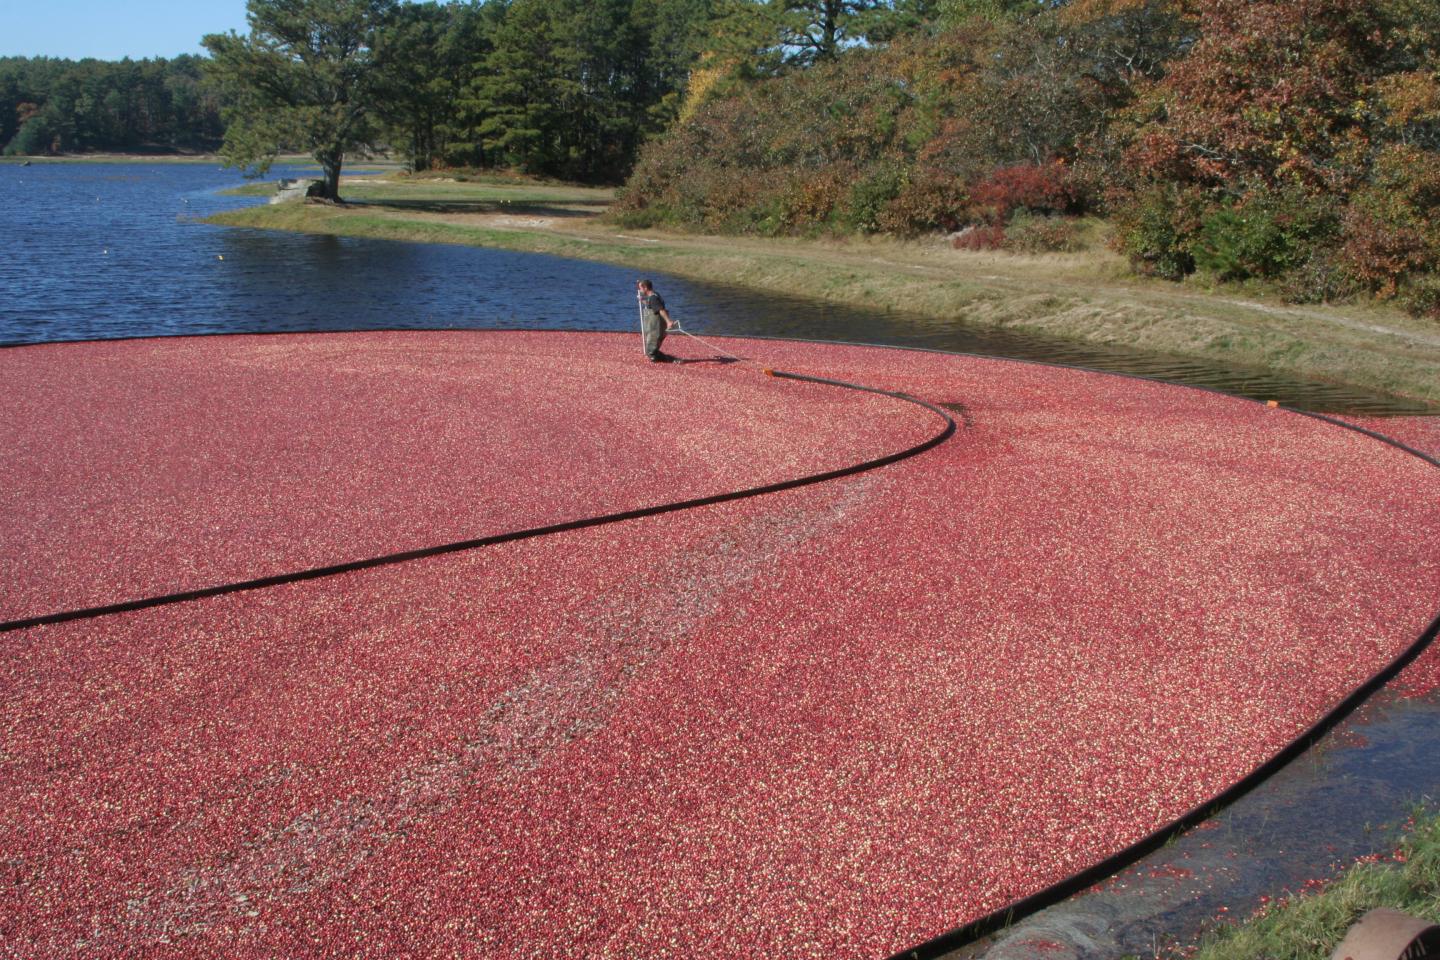 Wet cranberry harvest in Massachusetts